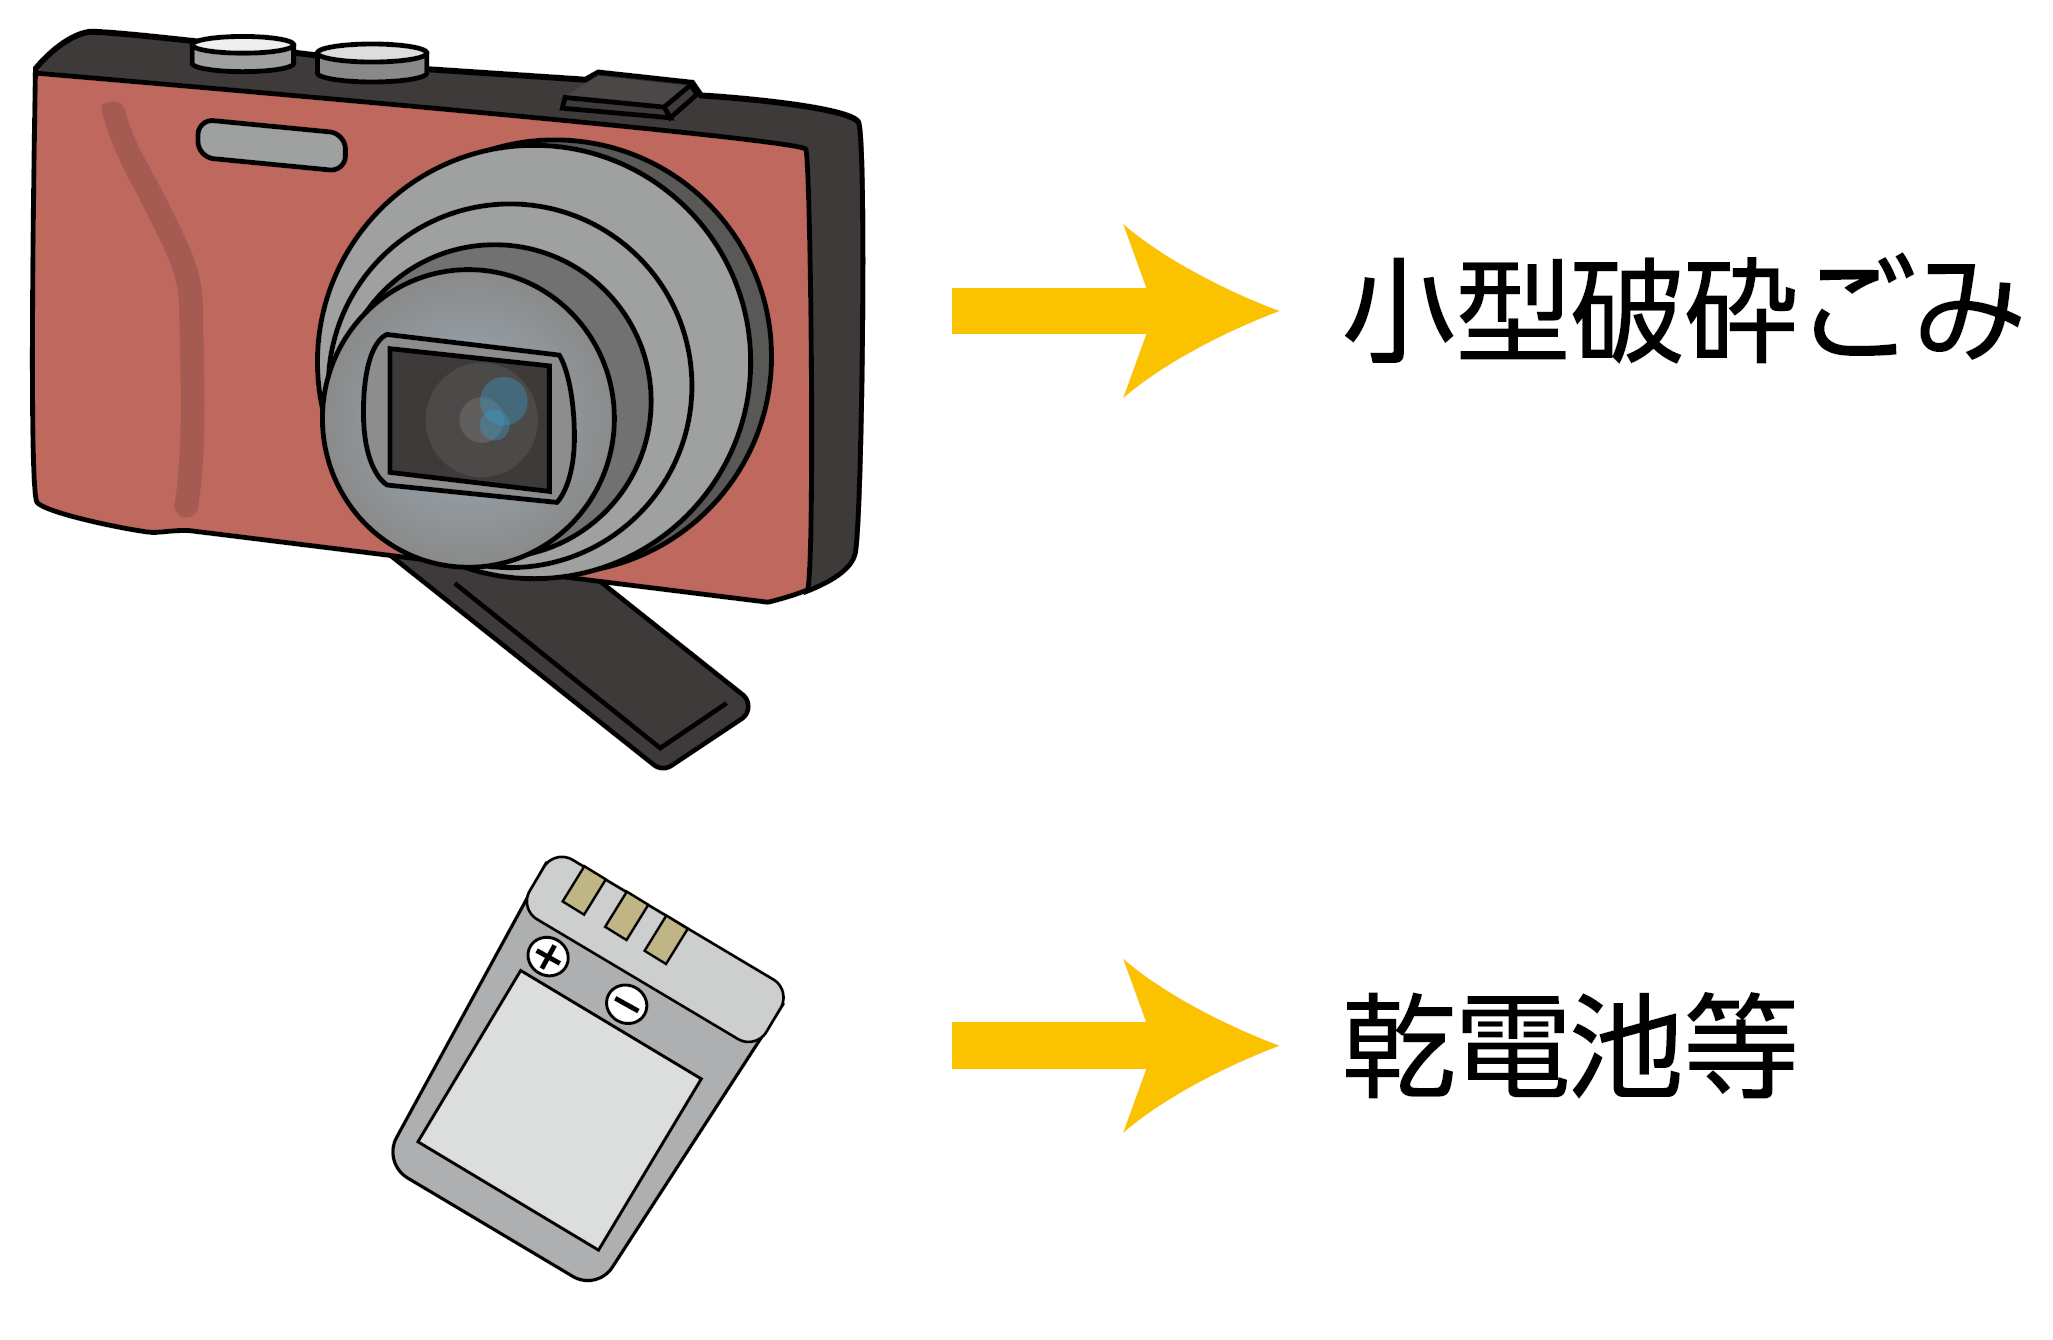 例えば、デジタルカメラの充電式電池は乾電池等に、充電式電池を外した本体は小型破砕ごみに捨てる。